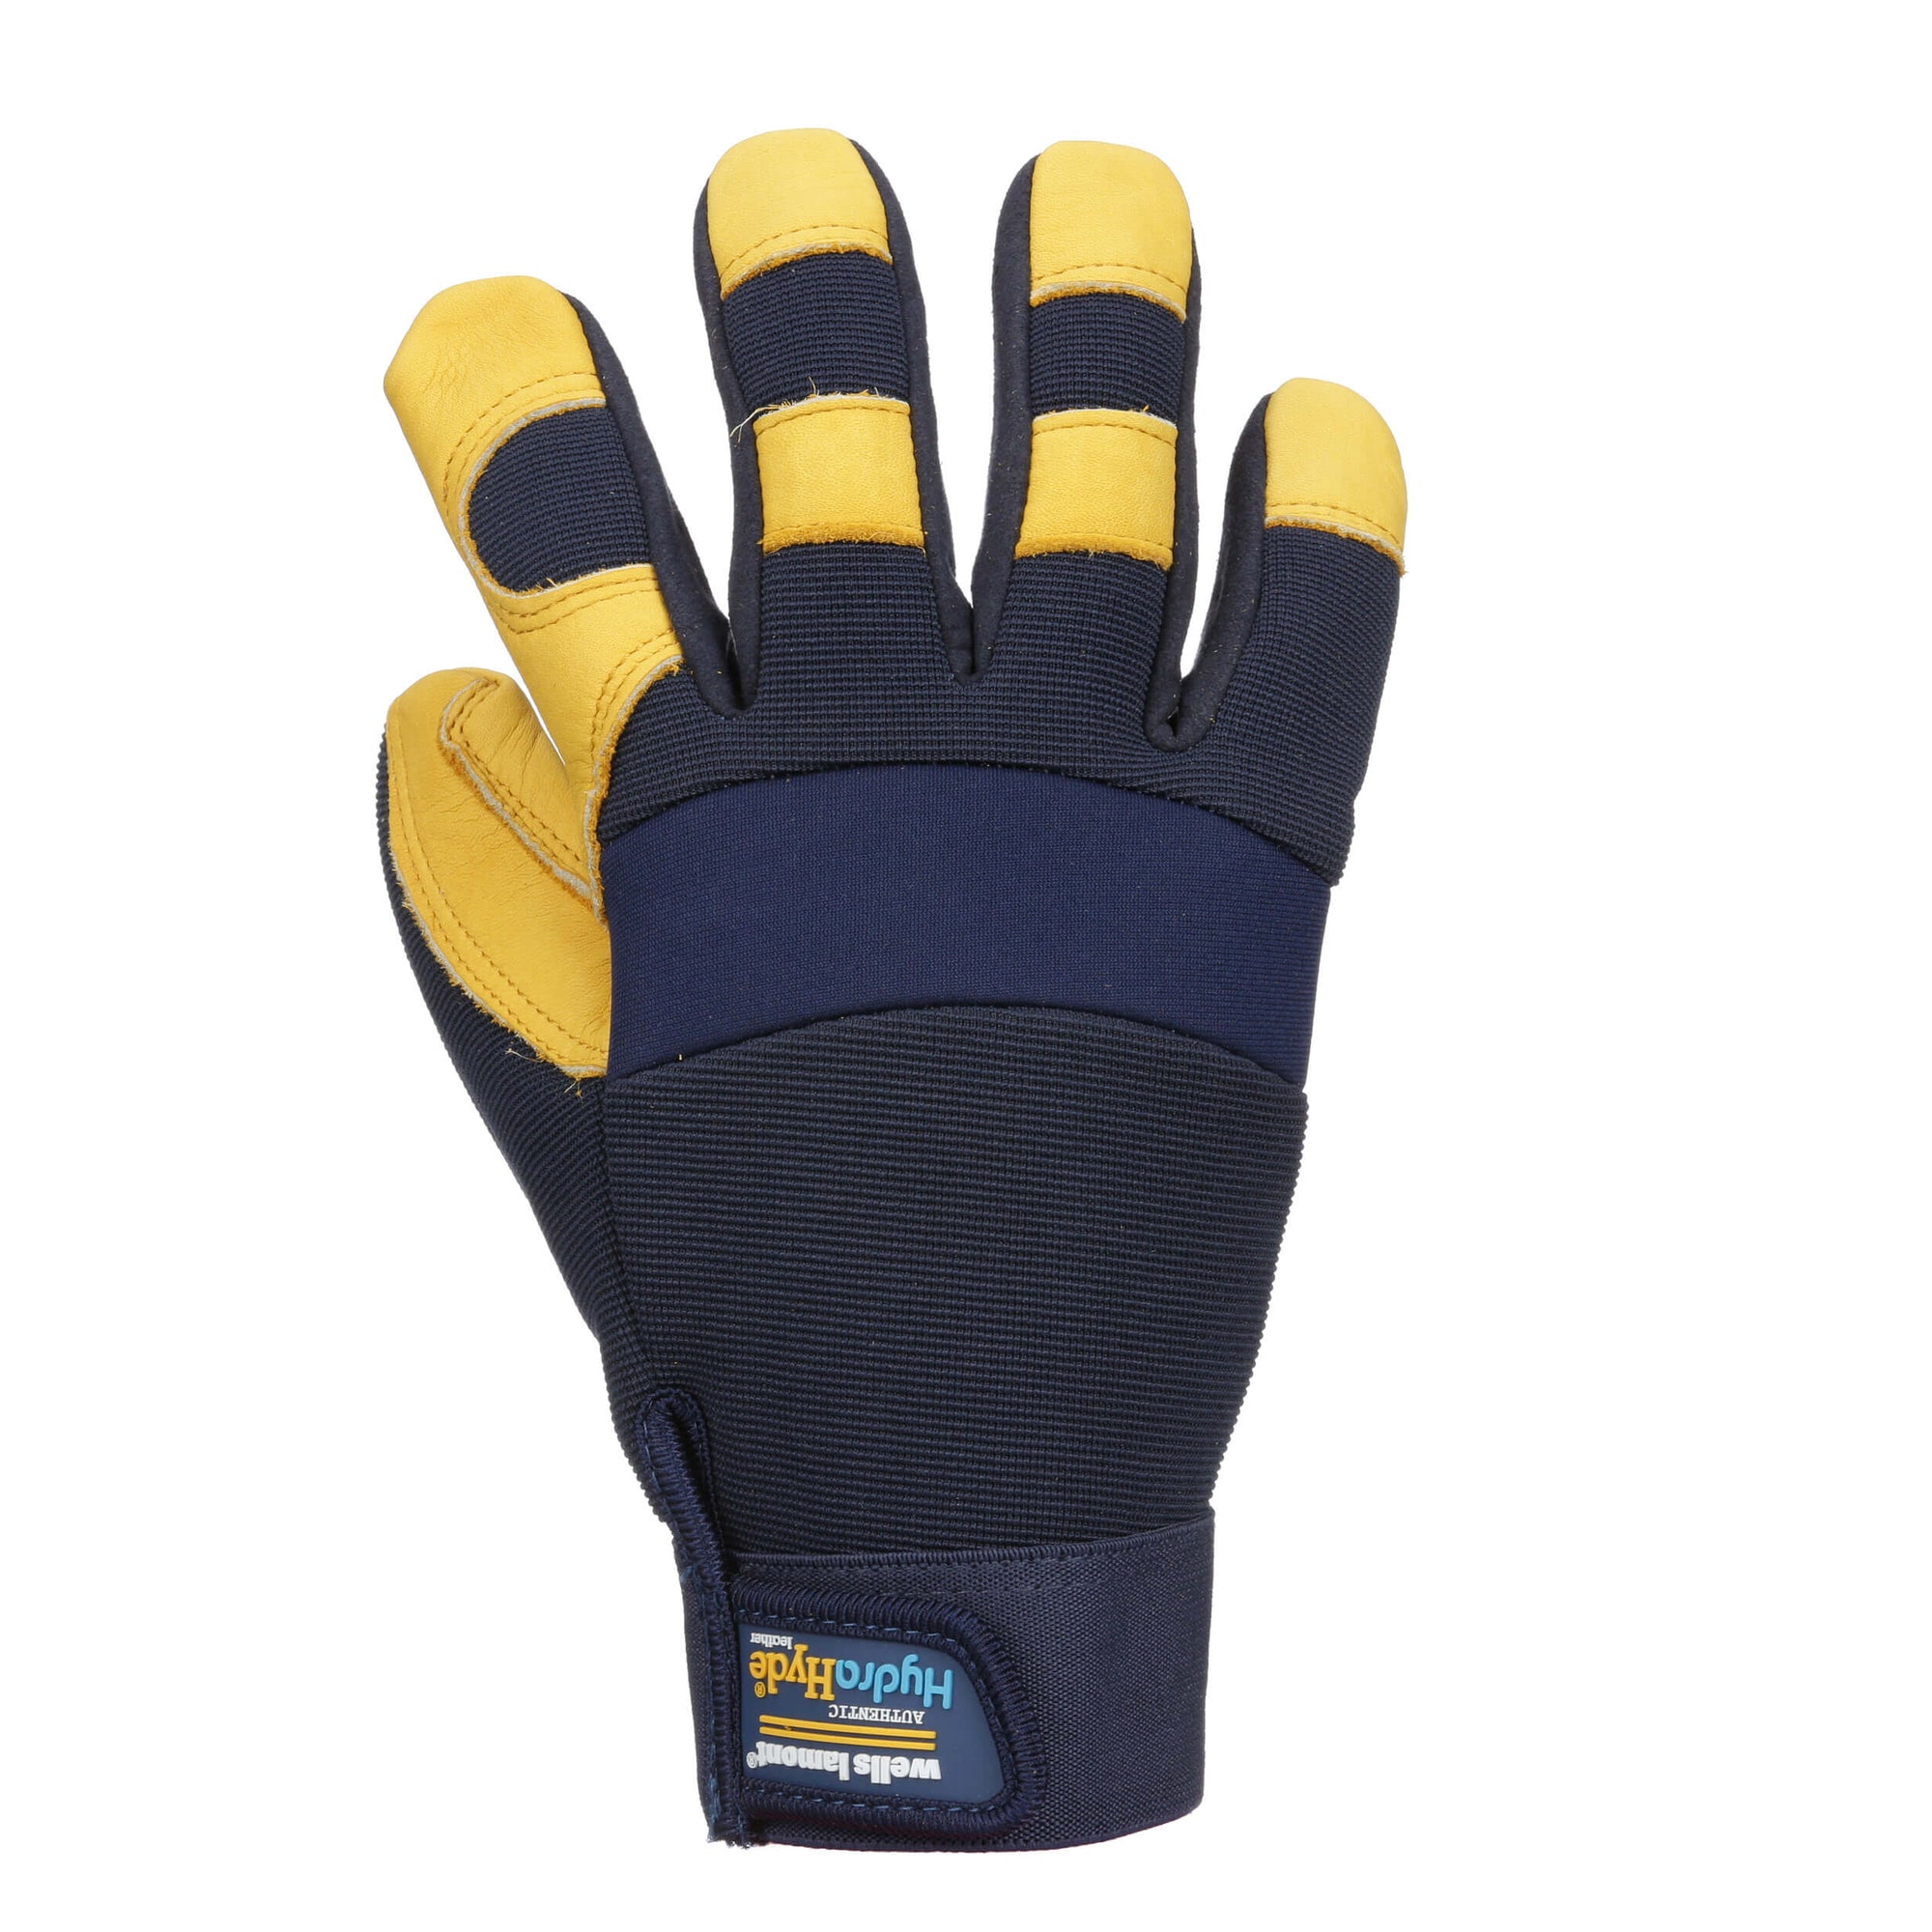 Wells Lamont Men's Leather Palm Work Gloves - Work World - Workwear, Work Boots, Safety Gear